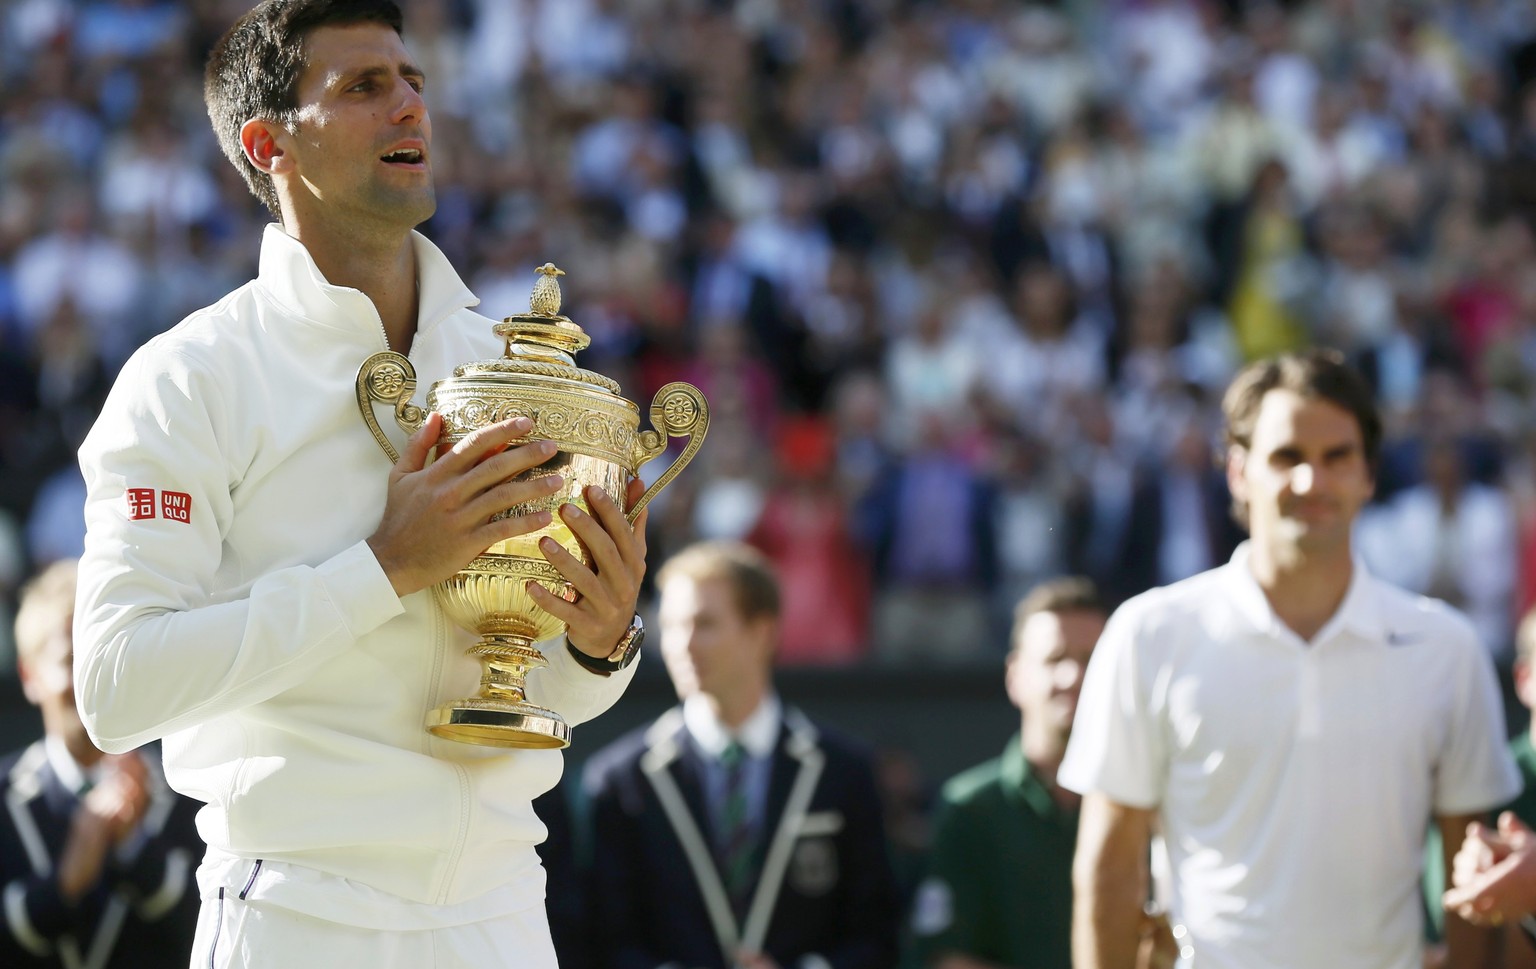 In Wimbledon war Roger Federer nur Zuschauer bei der Pokal-Präsentation. Das soll sich bei den kommenden Turnieren wieder ändern.&nbsp;